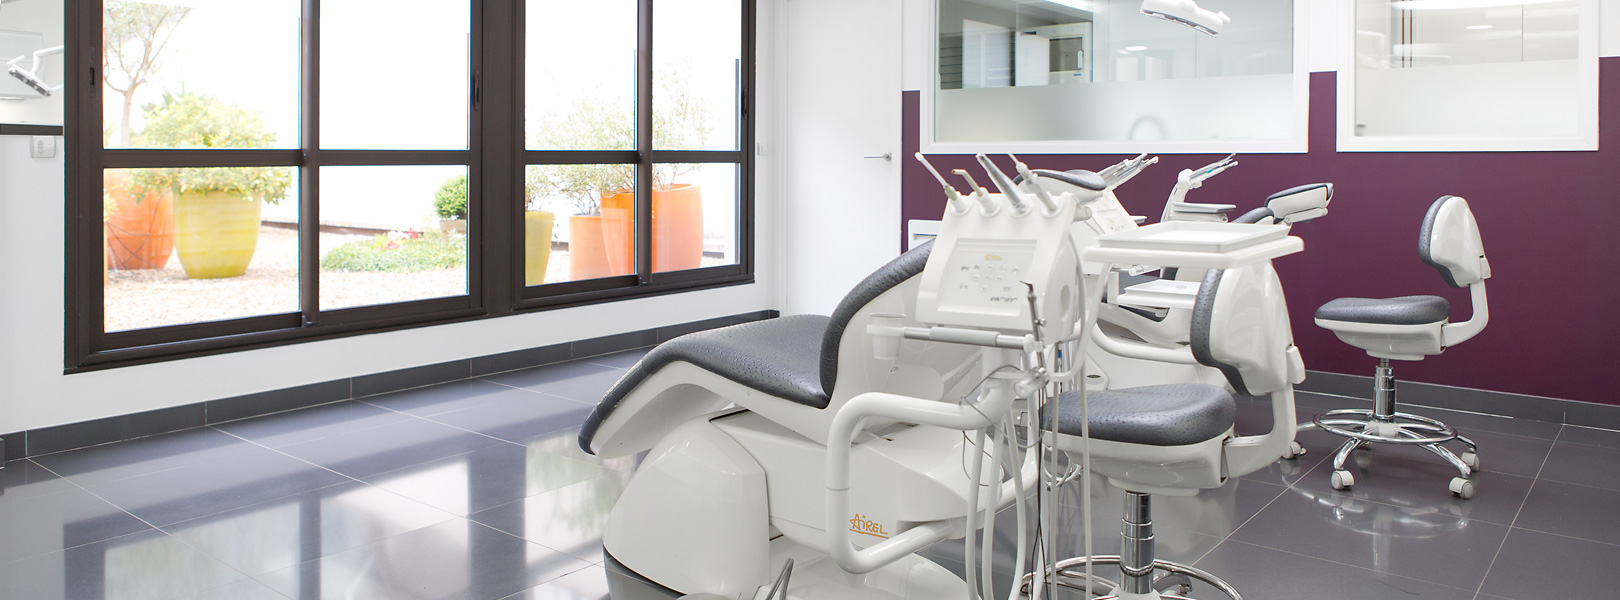 Fauteuils et équipements pour traitements orthodontiques, au cabinet du Dr. Prilleux à Brunoy